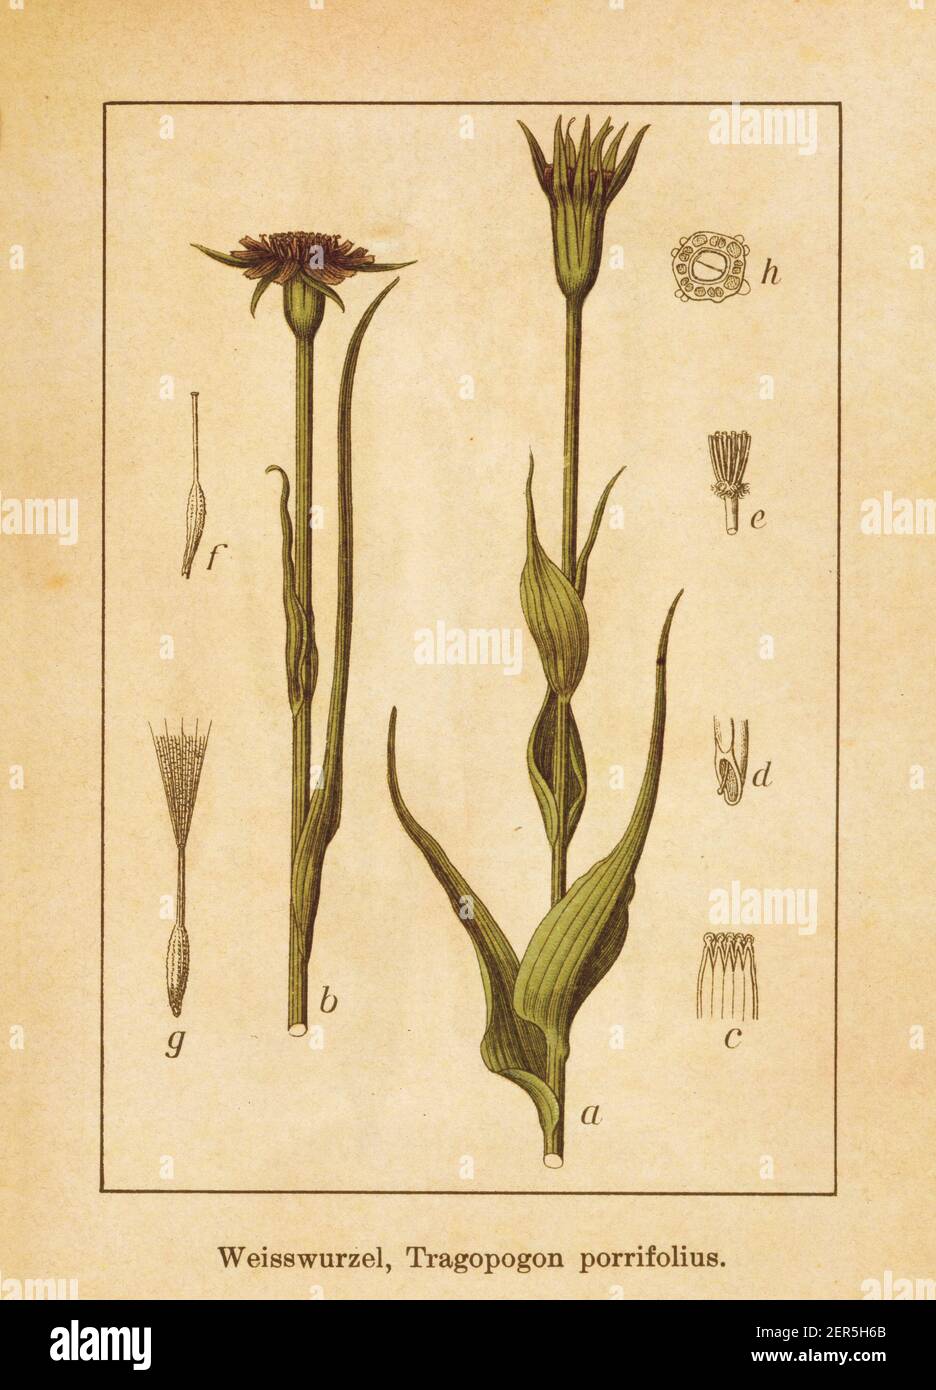 Antike Illustration eines Tragopogon porrifolius, auch bekannt als Salsify, lila Salsify, gemeinsame Salsify, Austernpflanze, Gemüseauster, Jerusalem Sta Stockfoto